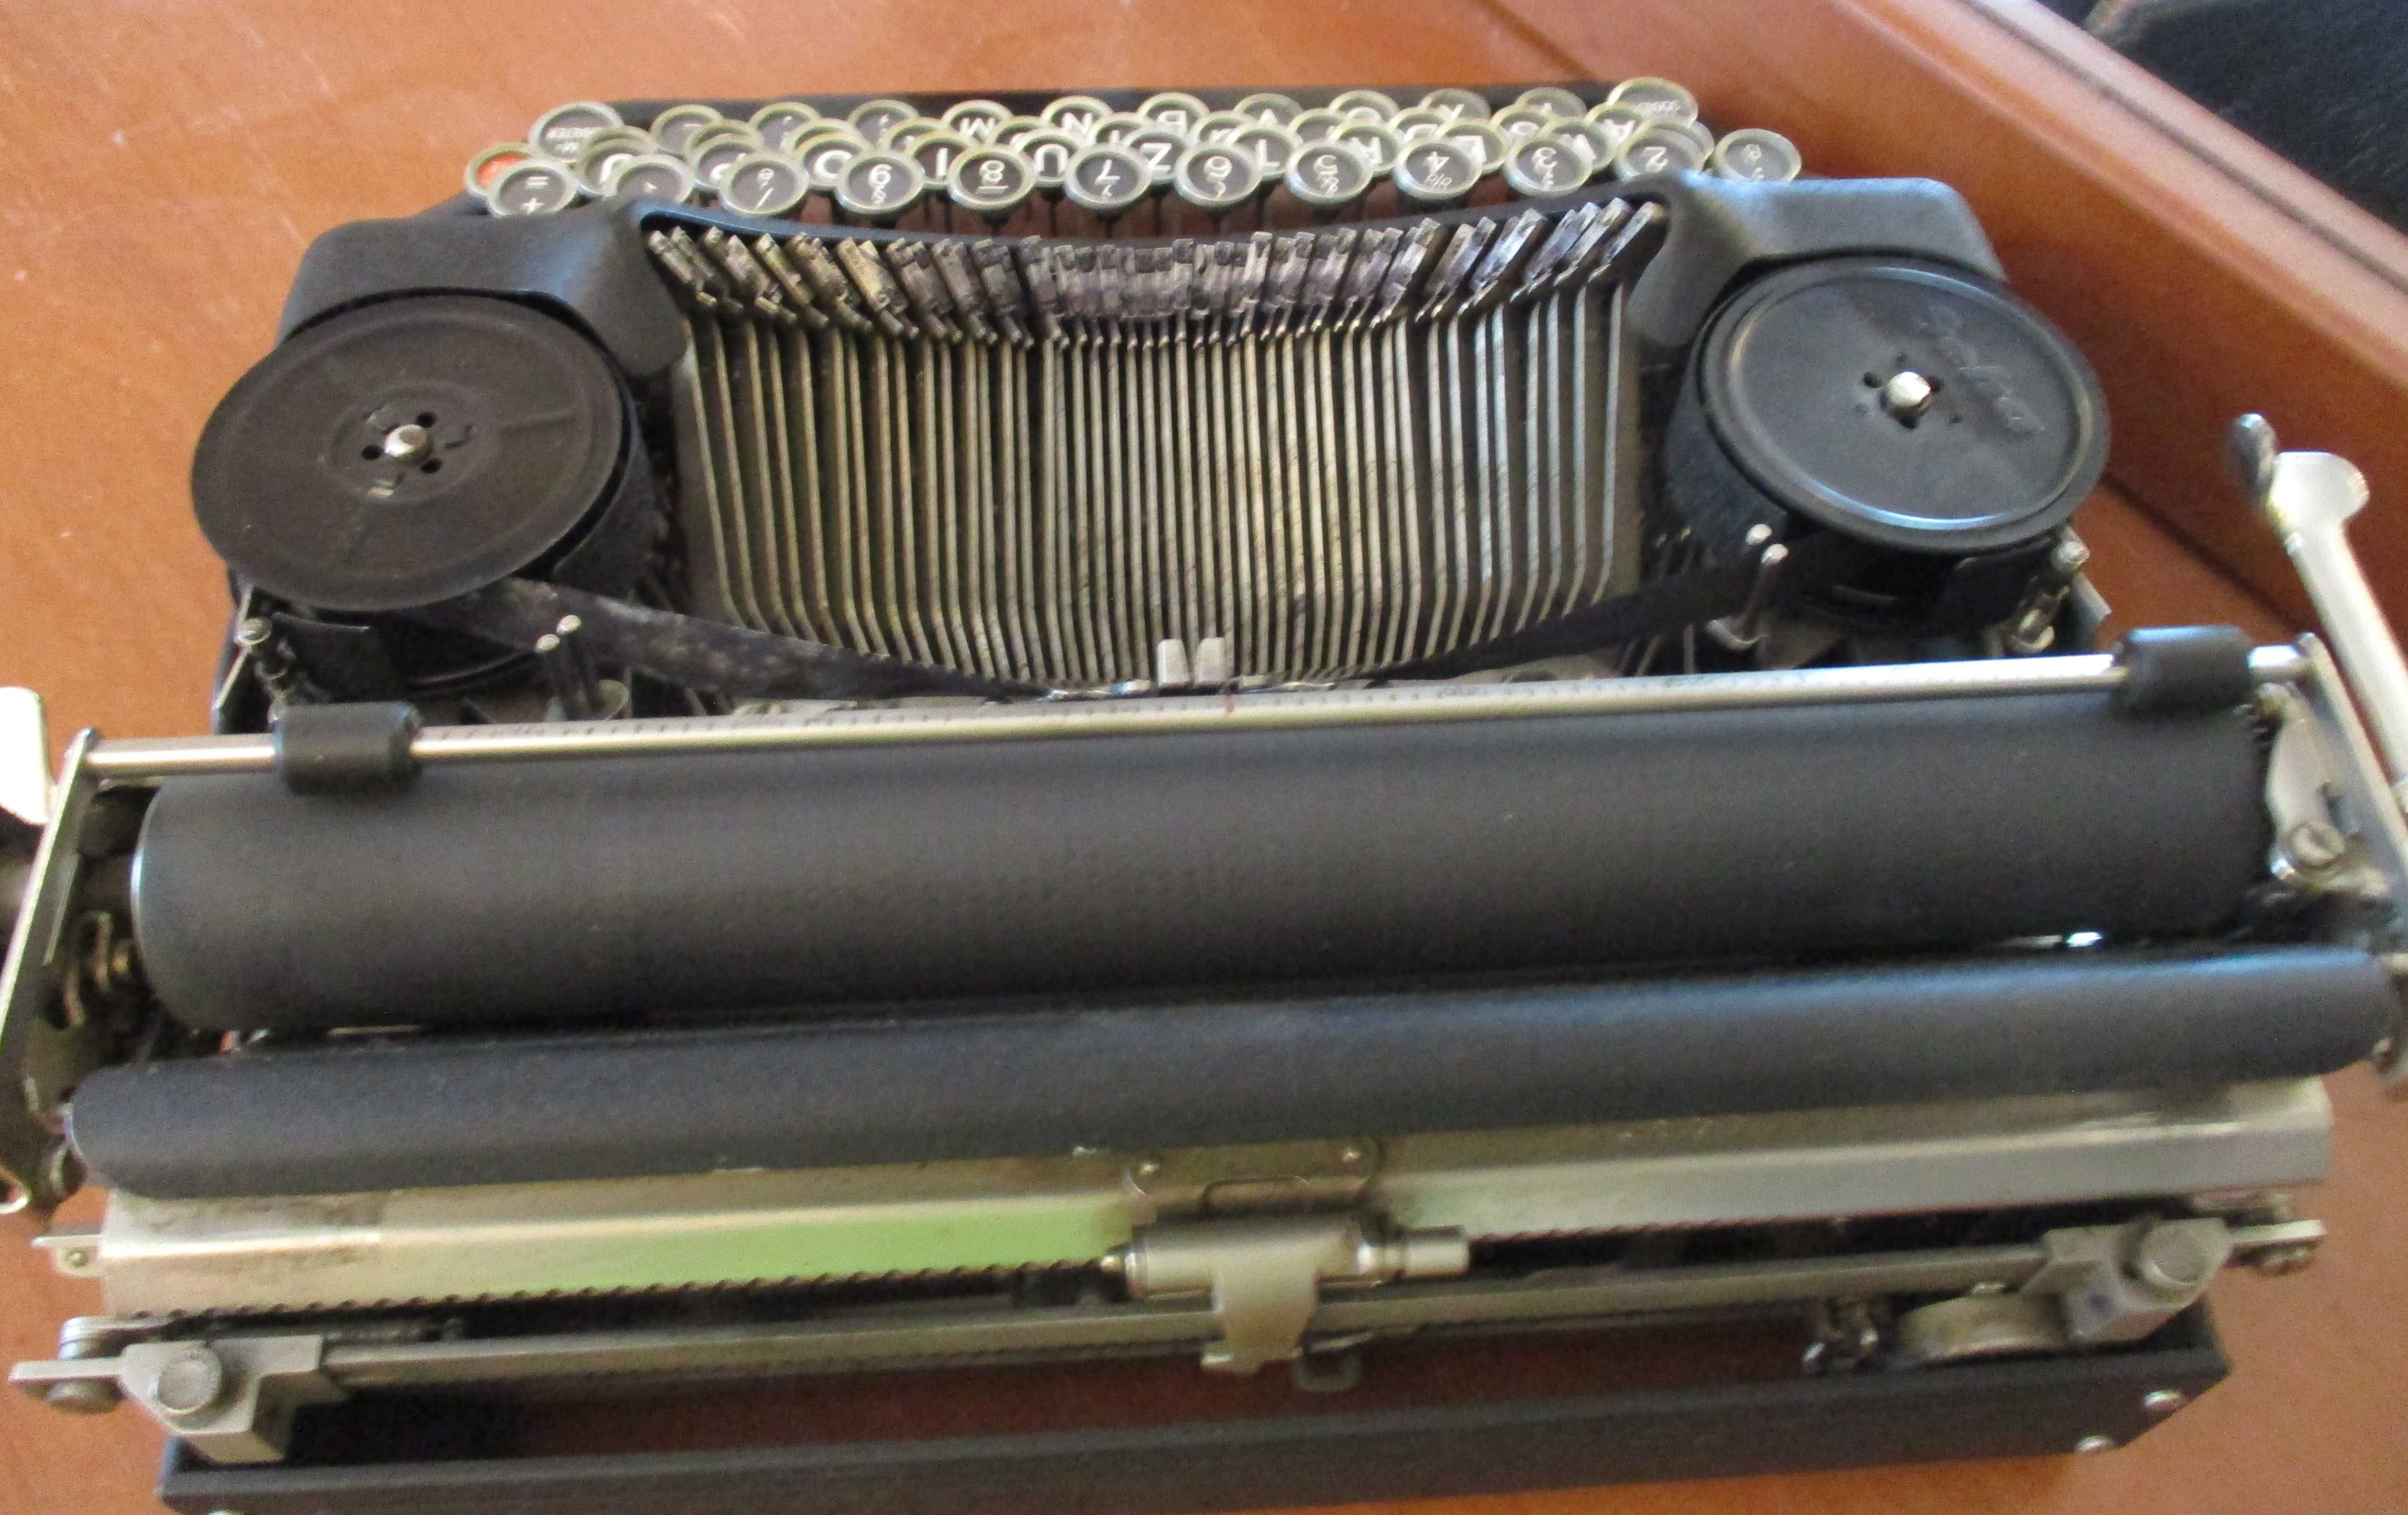 Maquina de escrever – Vintage – Anos 30